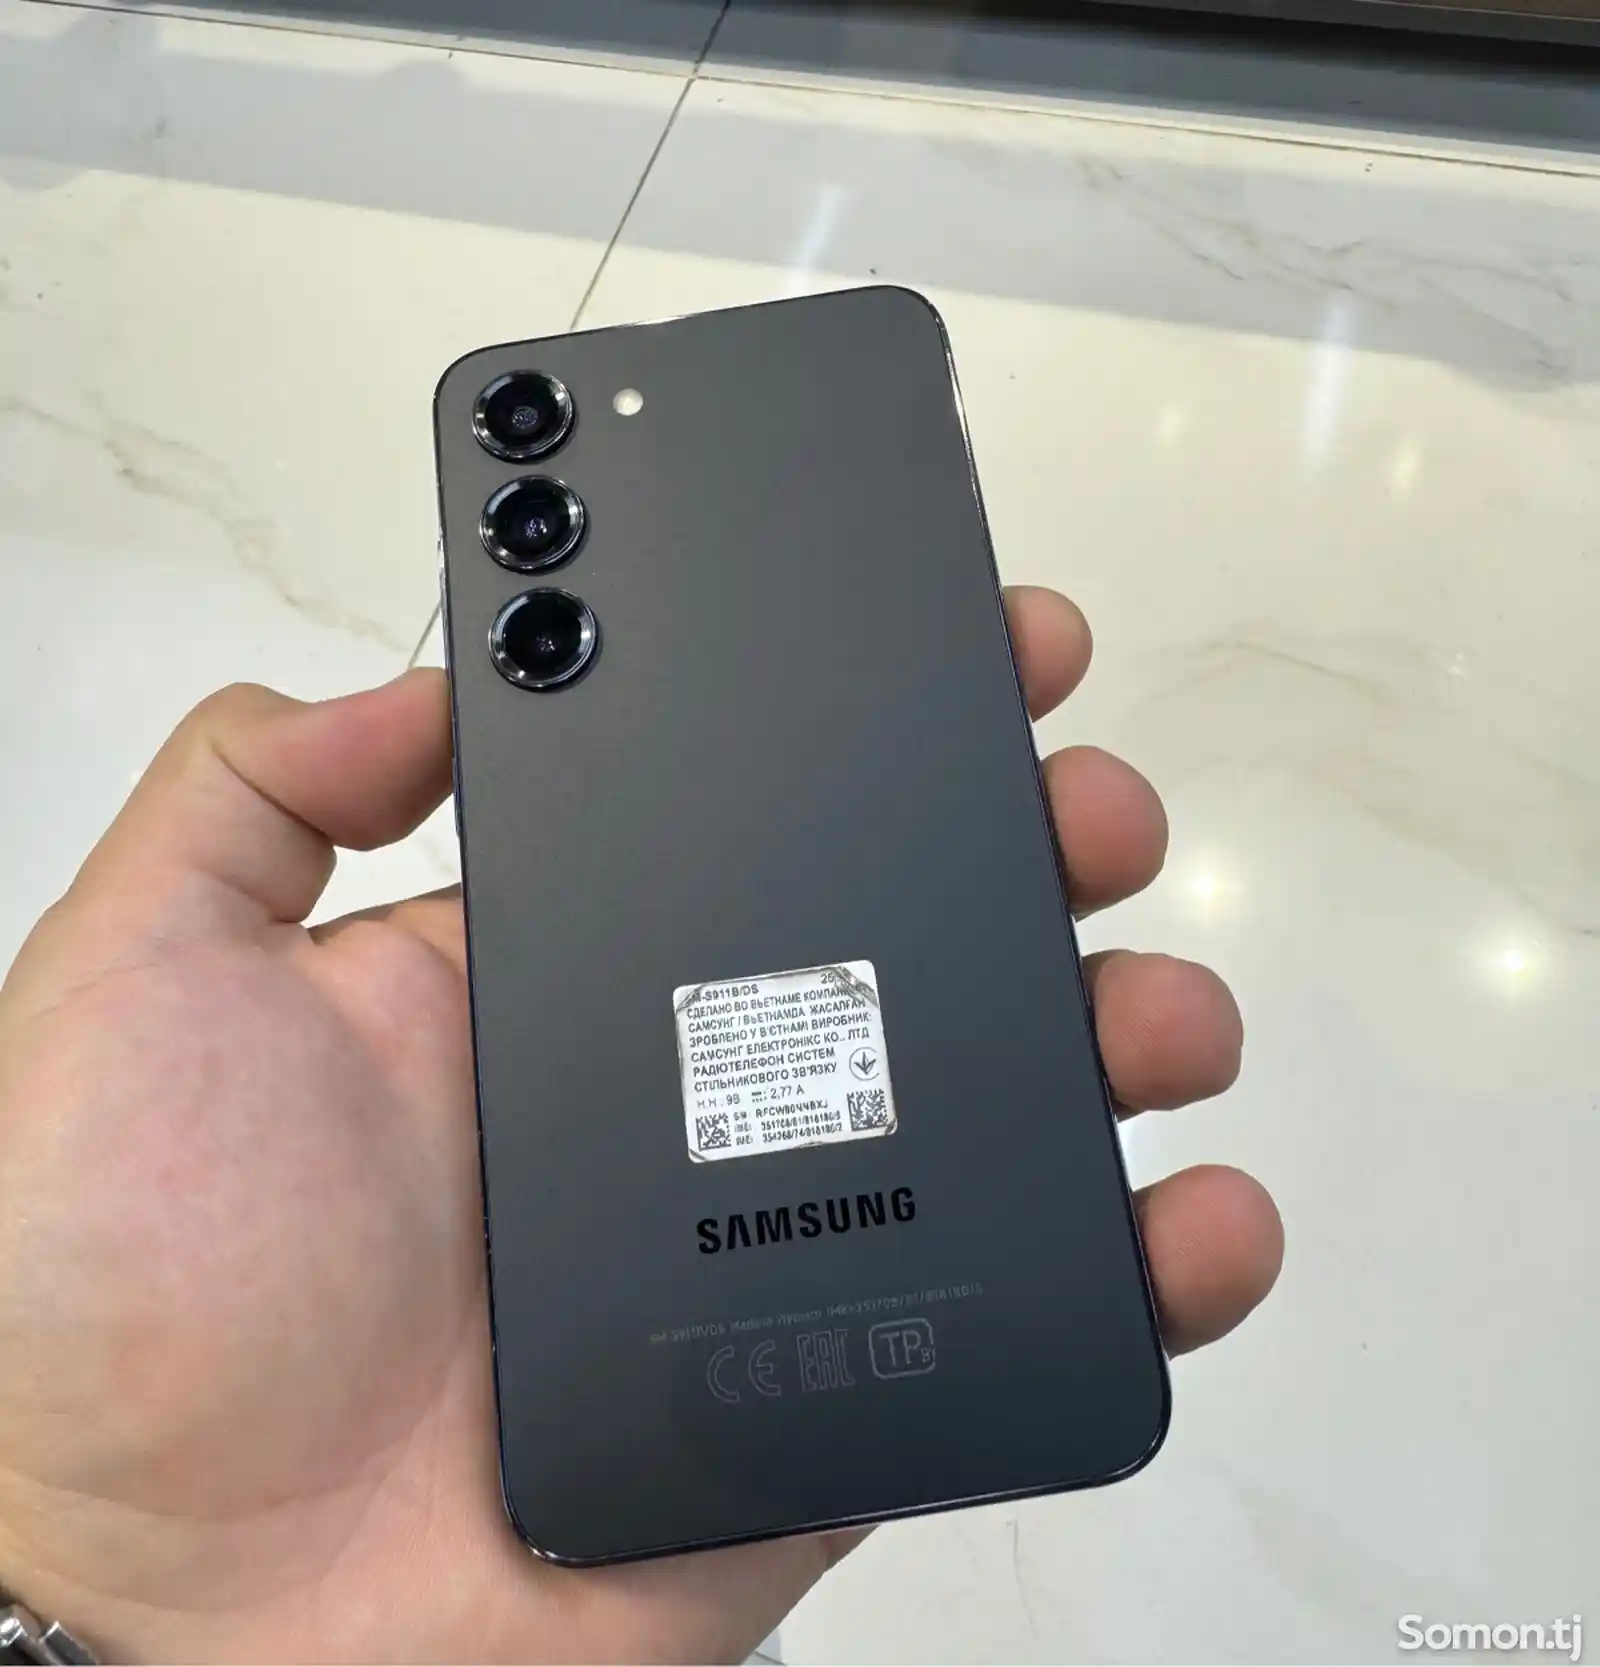 Samsung Galaxy S23 8/256gb-1